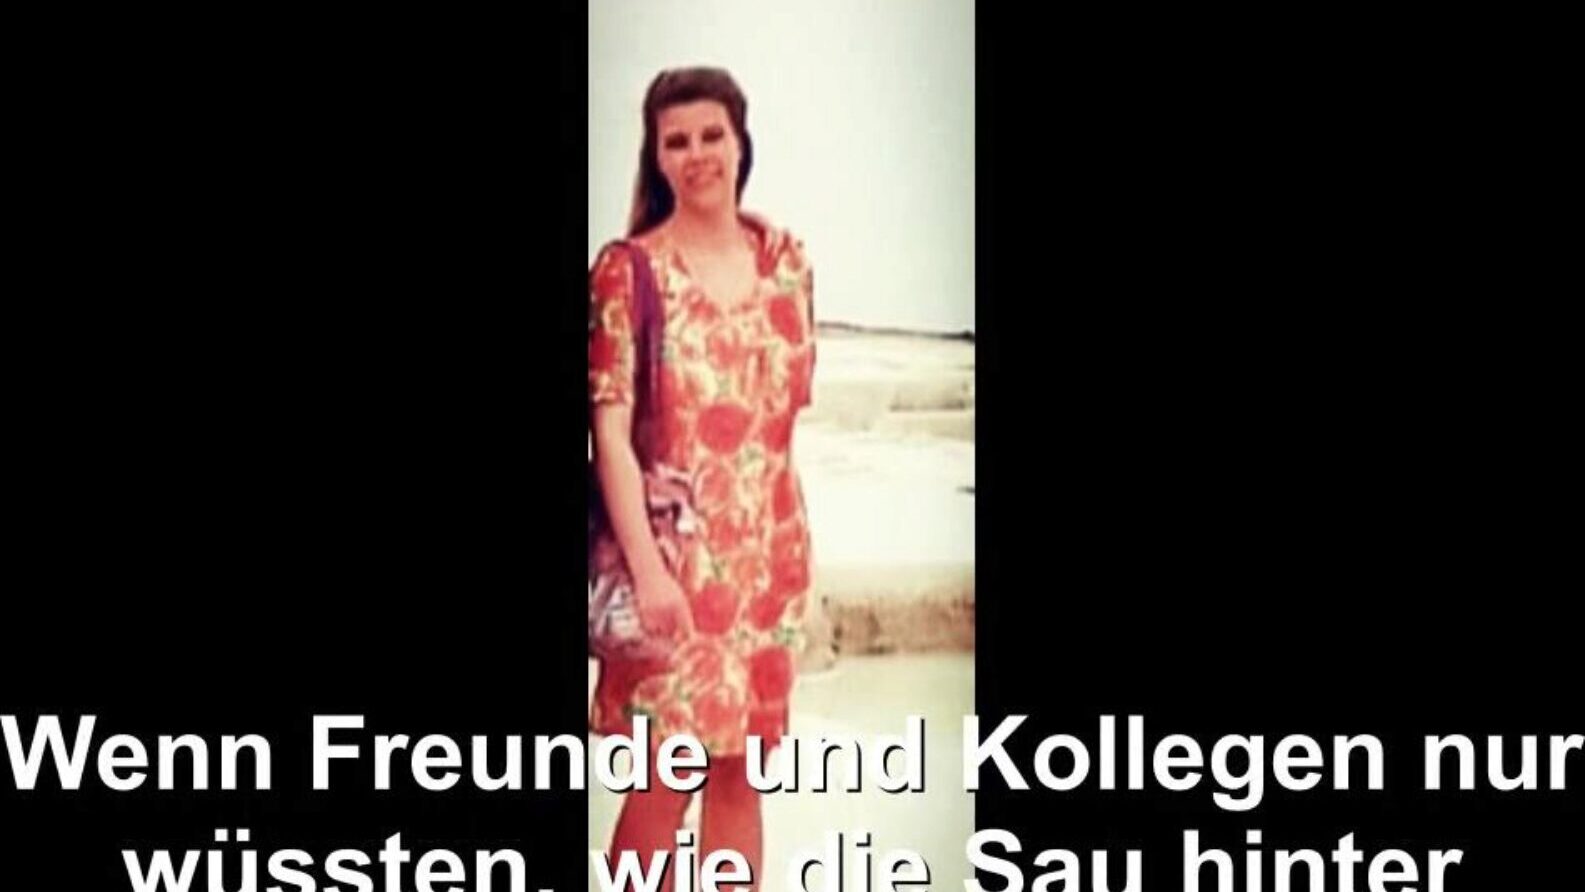 tysk husmor utsatt, gratis kanal tysk hd porno bd se tysk husmor eksponert filmscene på xhamster, den største hd elskov tube nettstedet med tonnevis av gratis-for-alle kanal tysk tysk kone og hjemmelagde porno filmscener